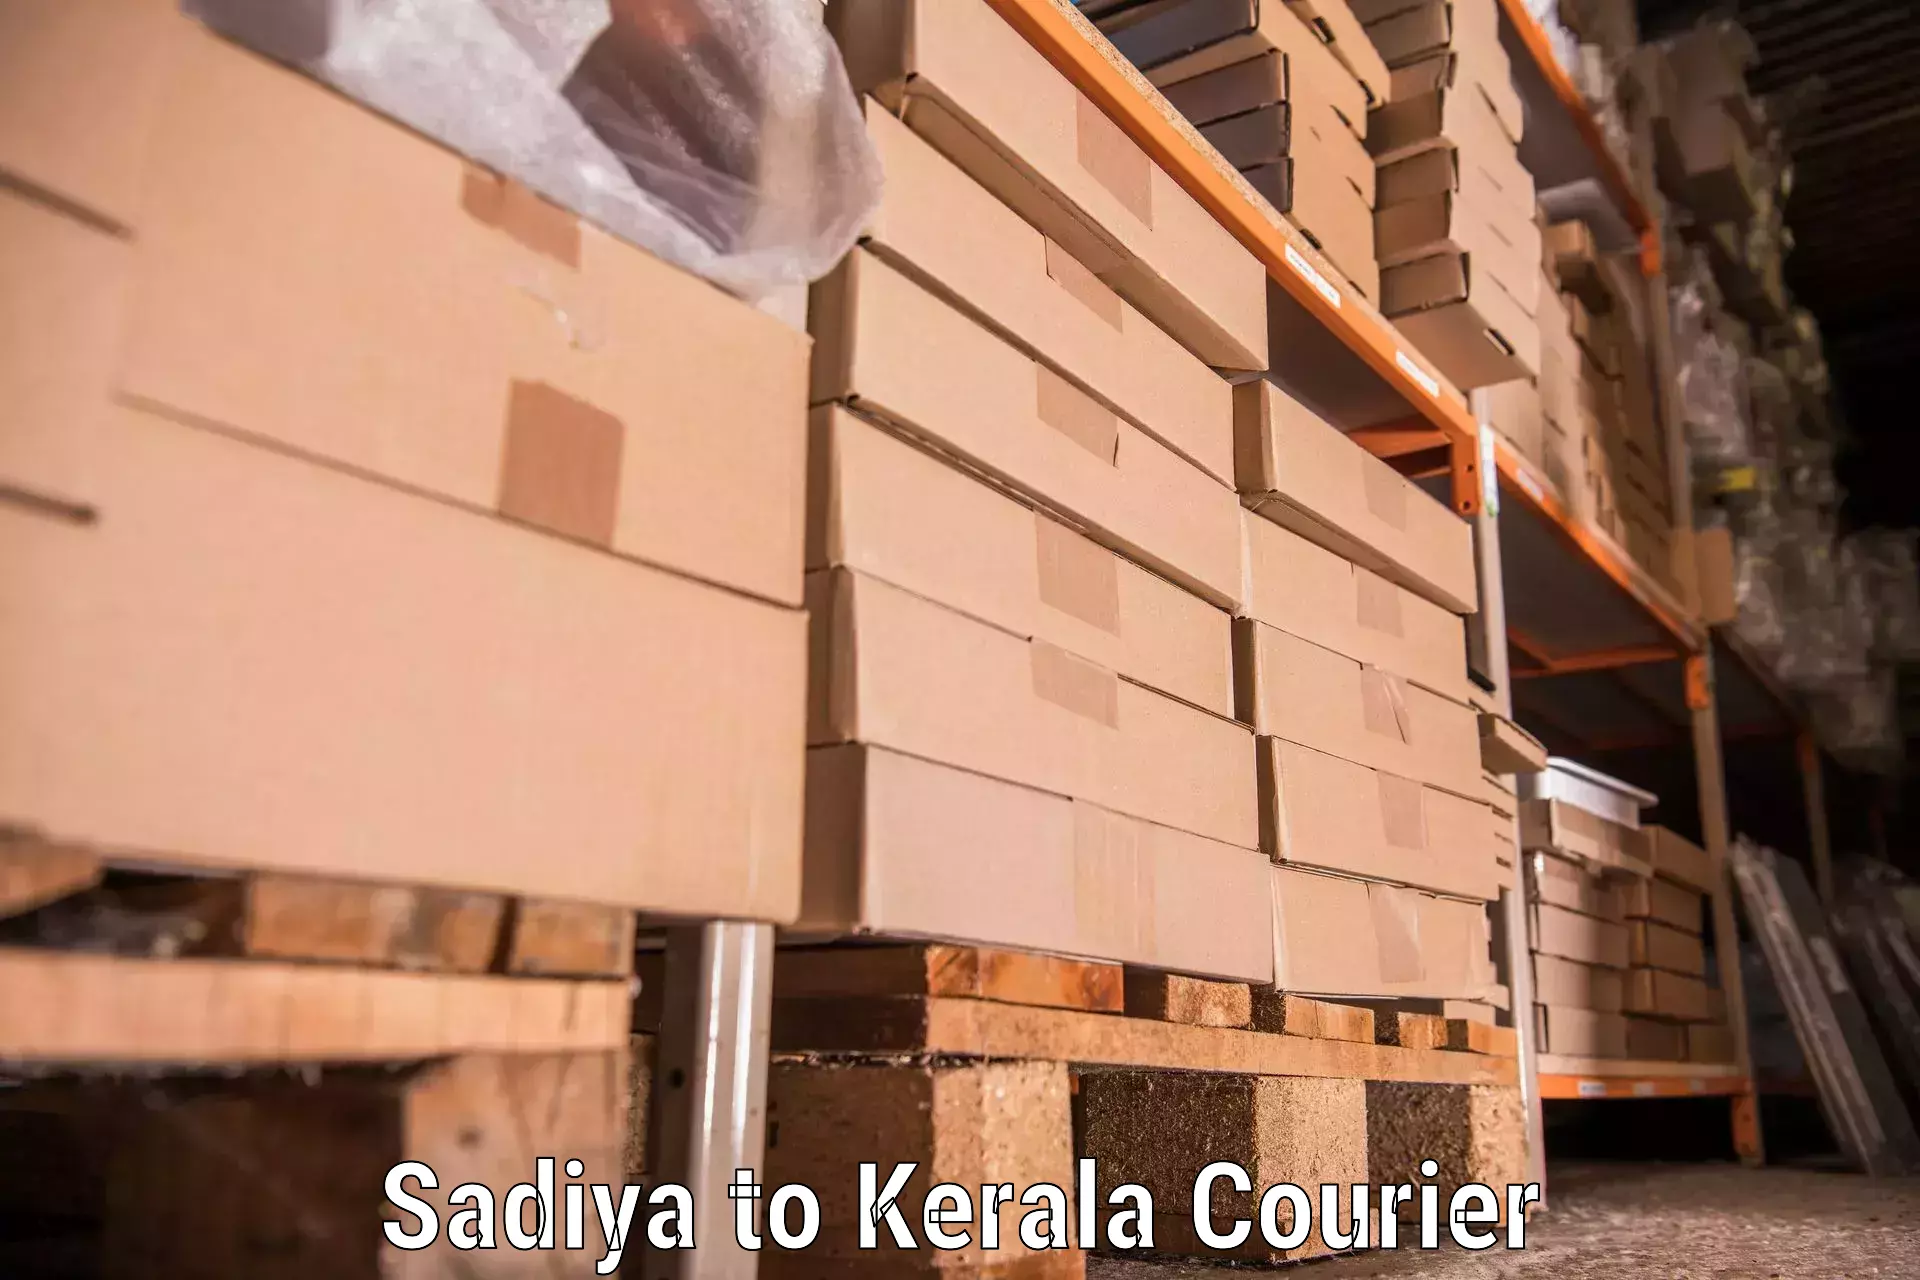 Moving and packing experts Sadiya to Chungathara